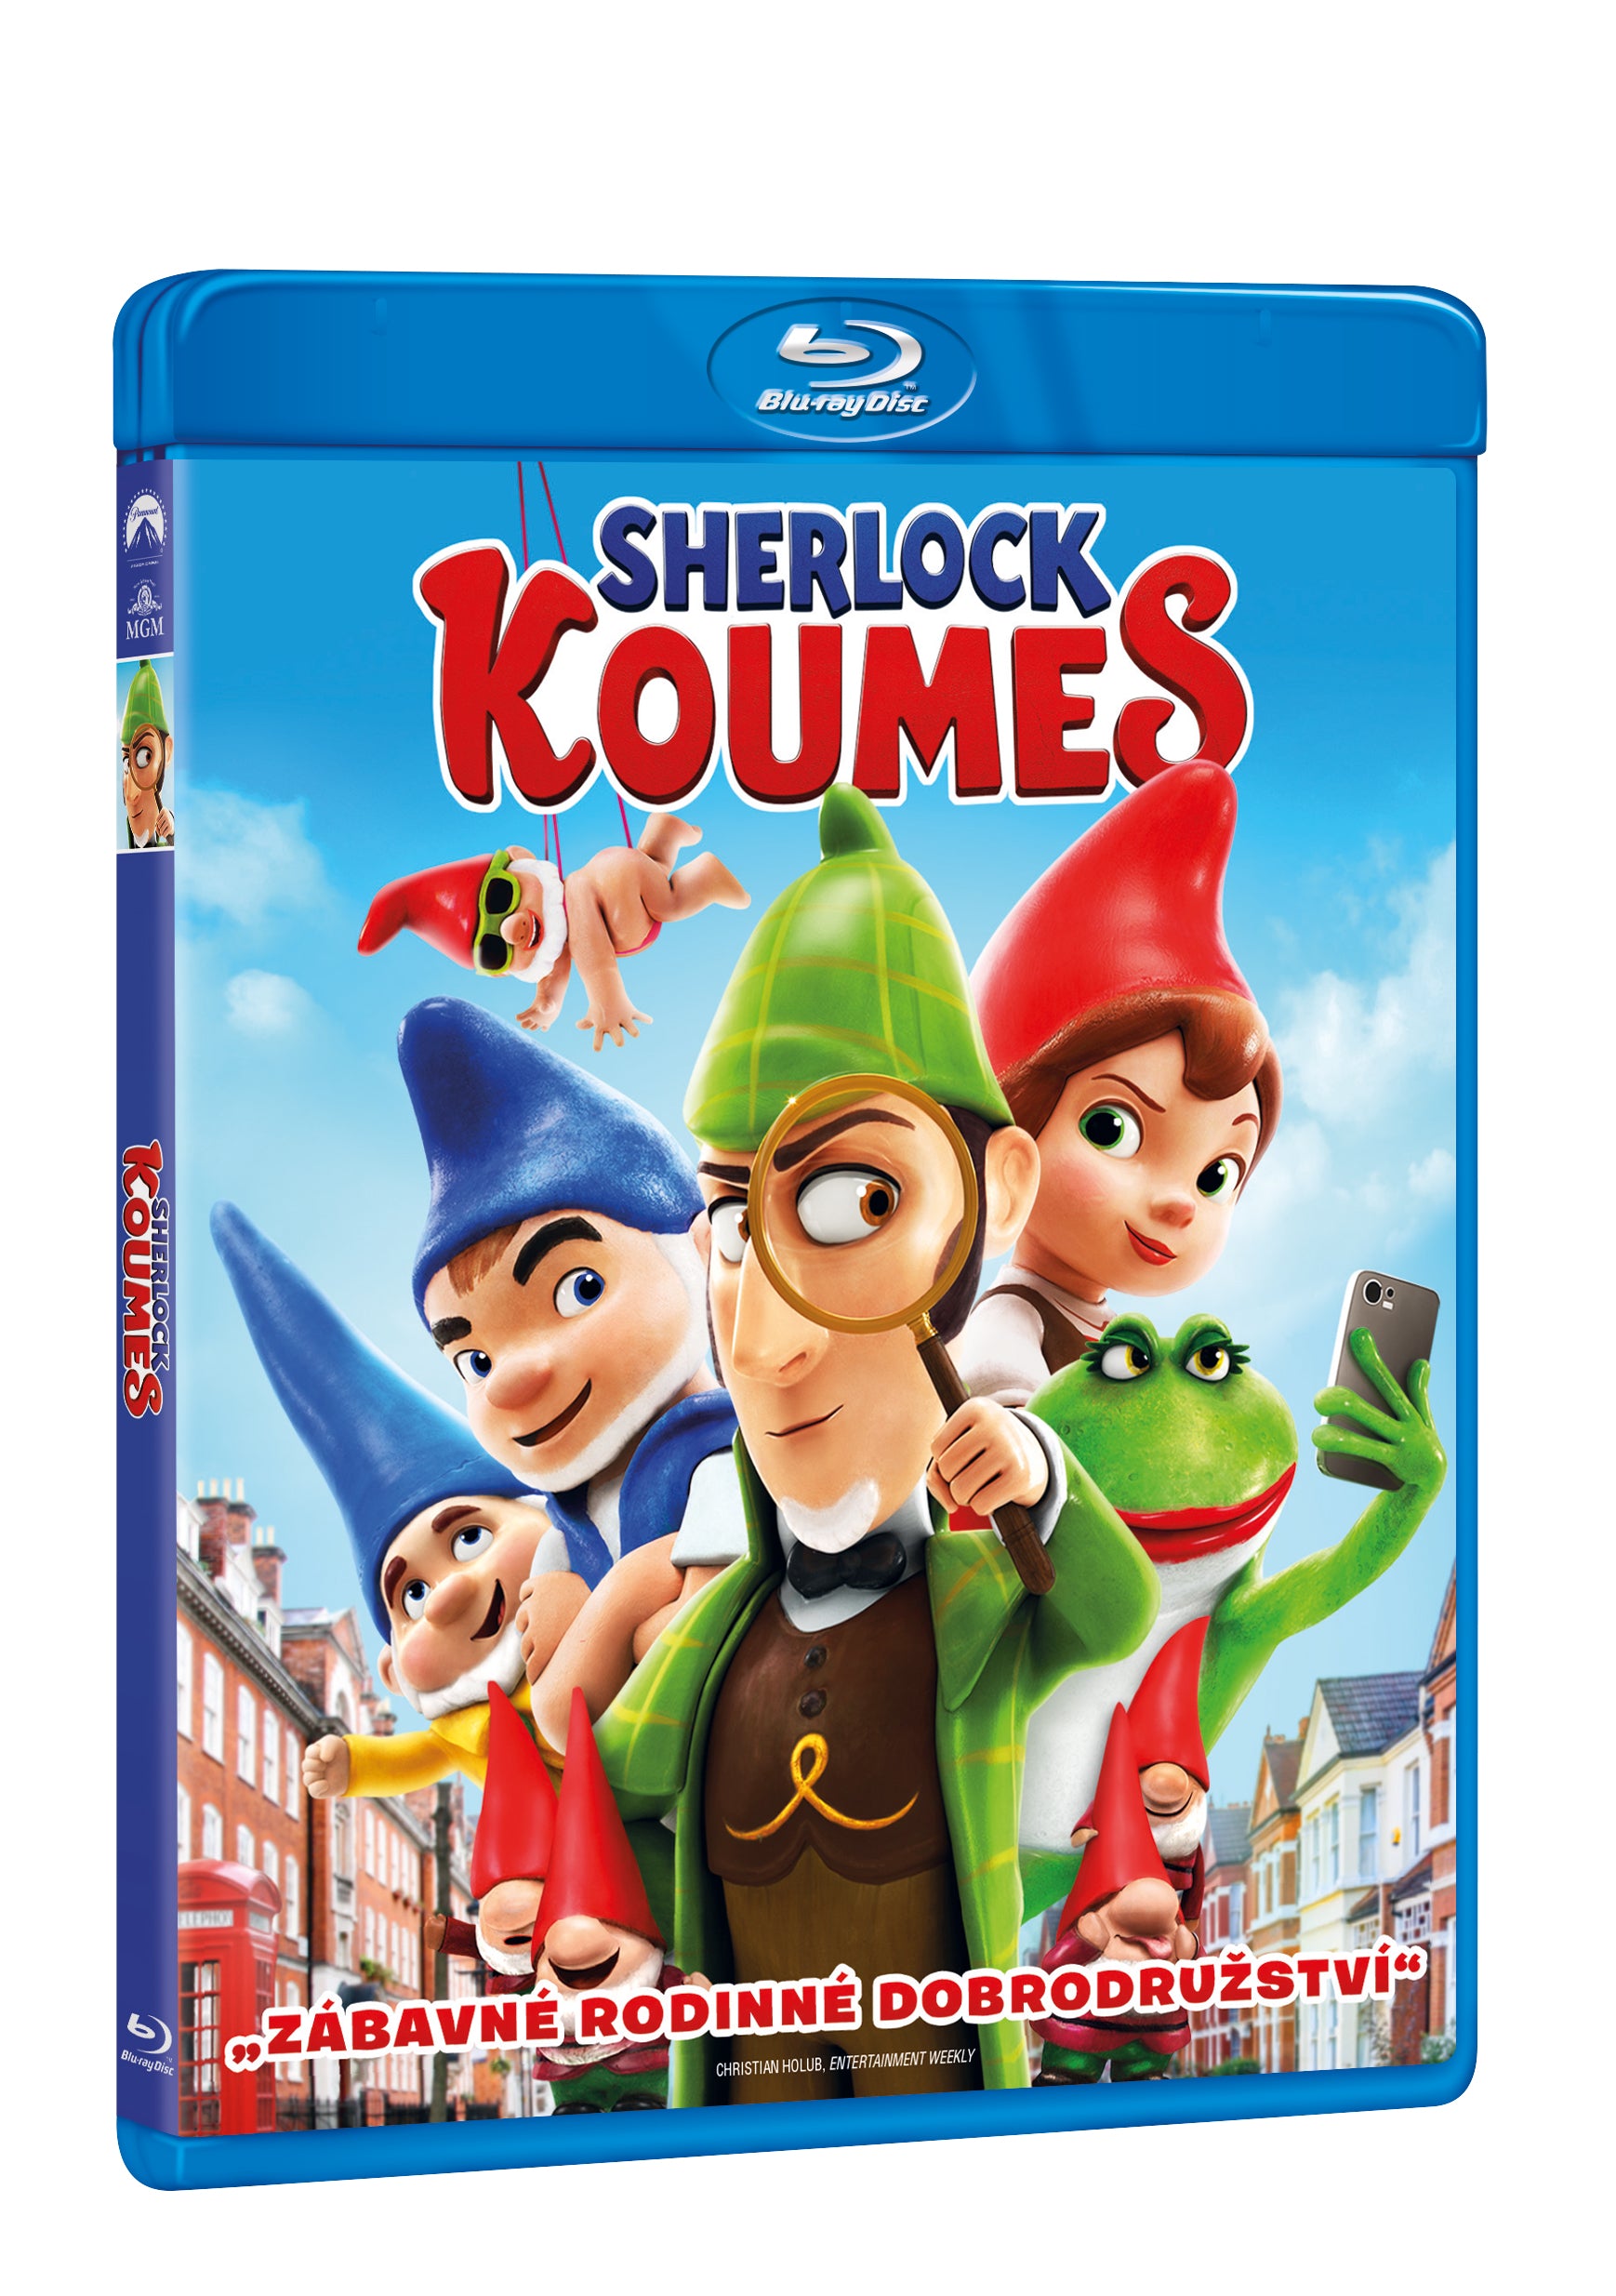 Sherlock Koumes BD / Sherlock Gnomes - Czech version